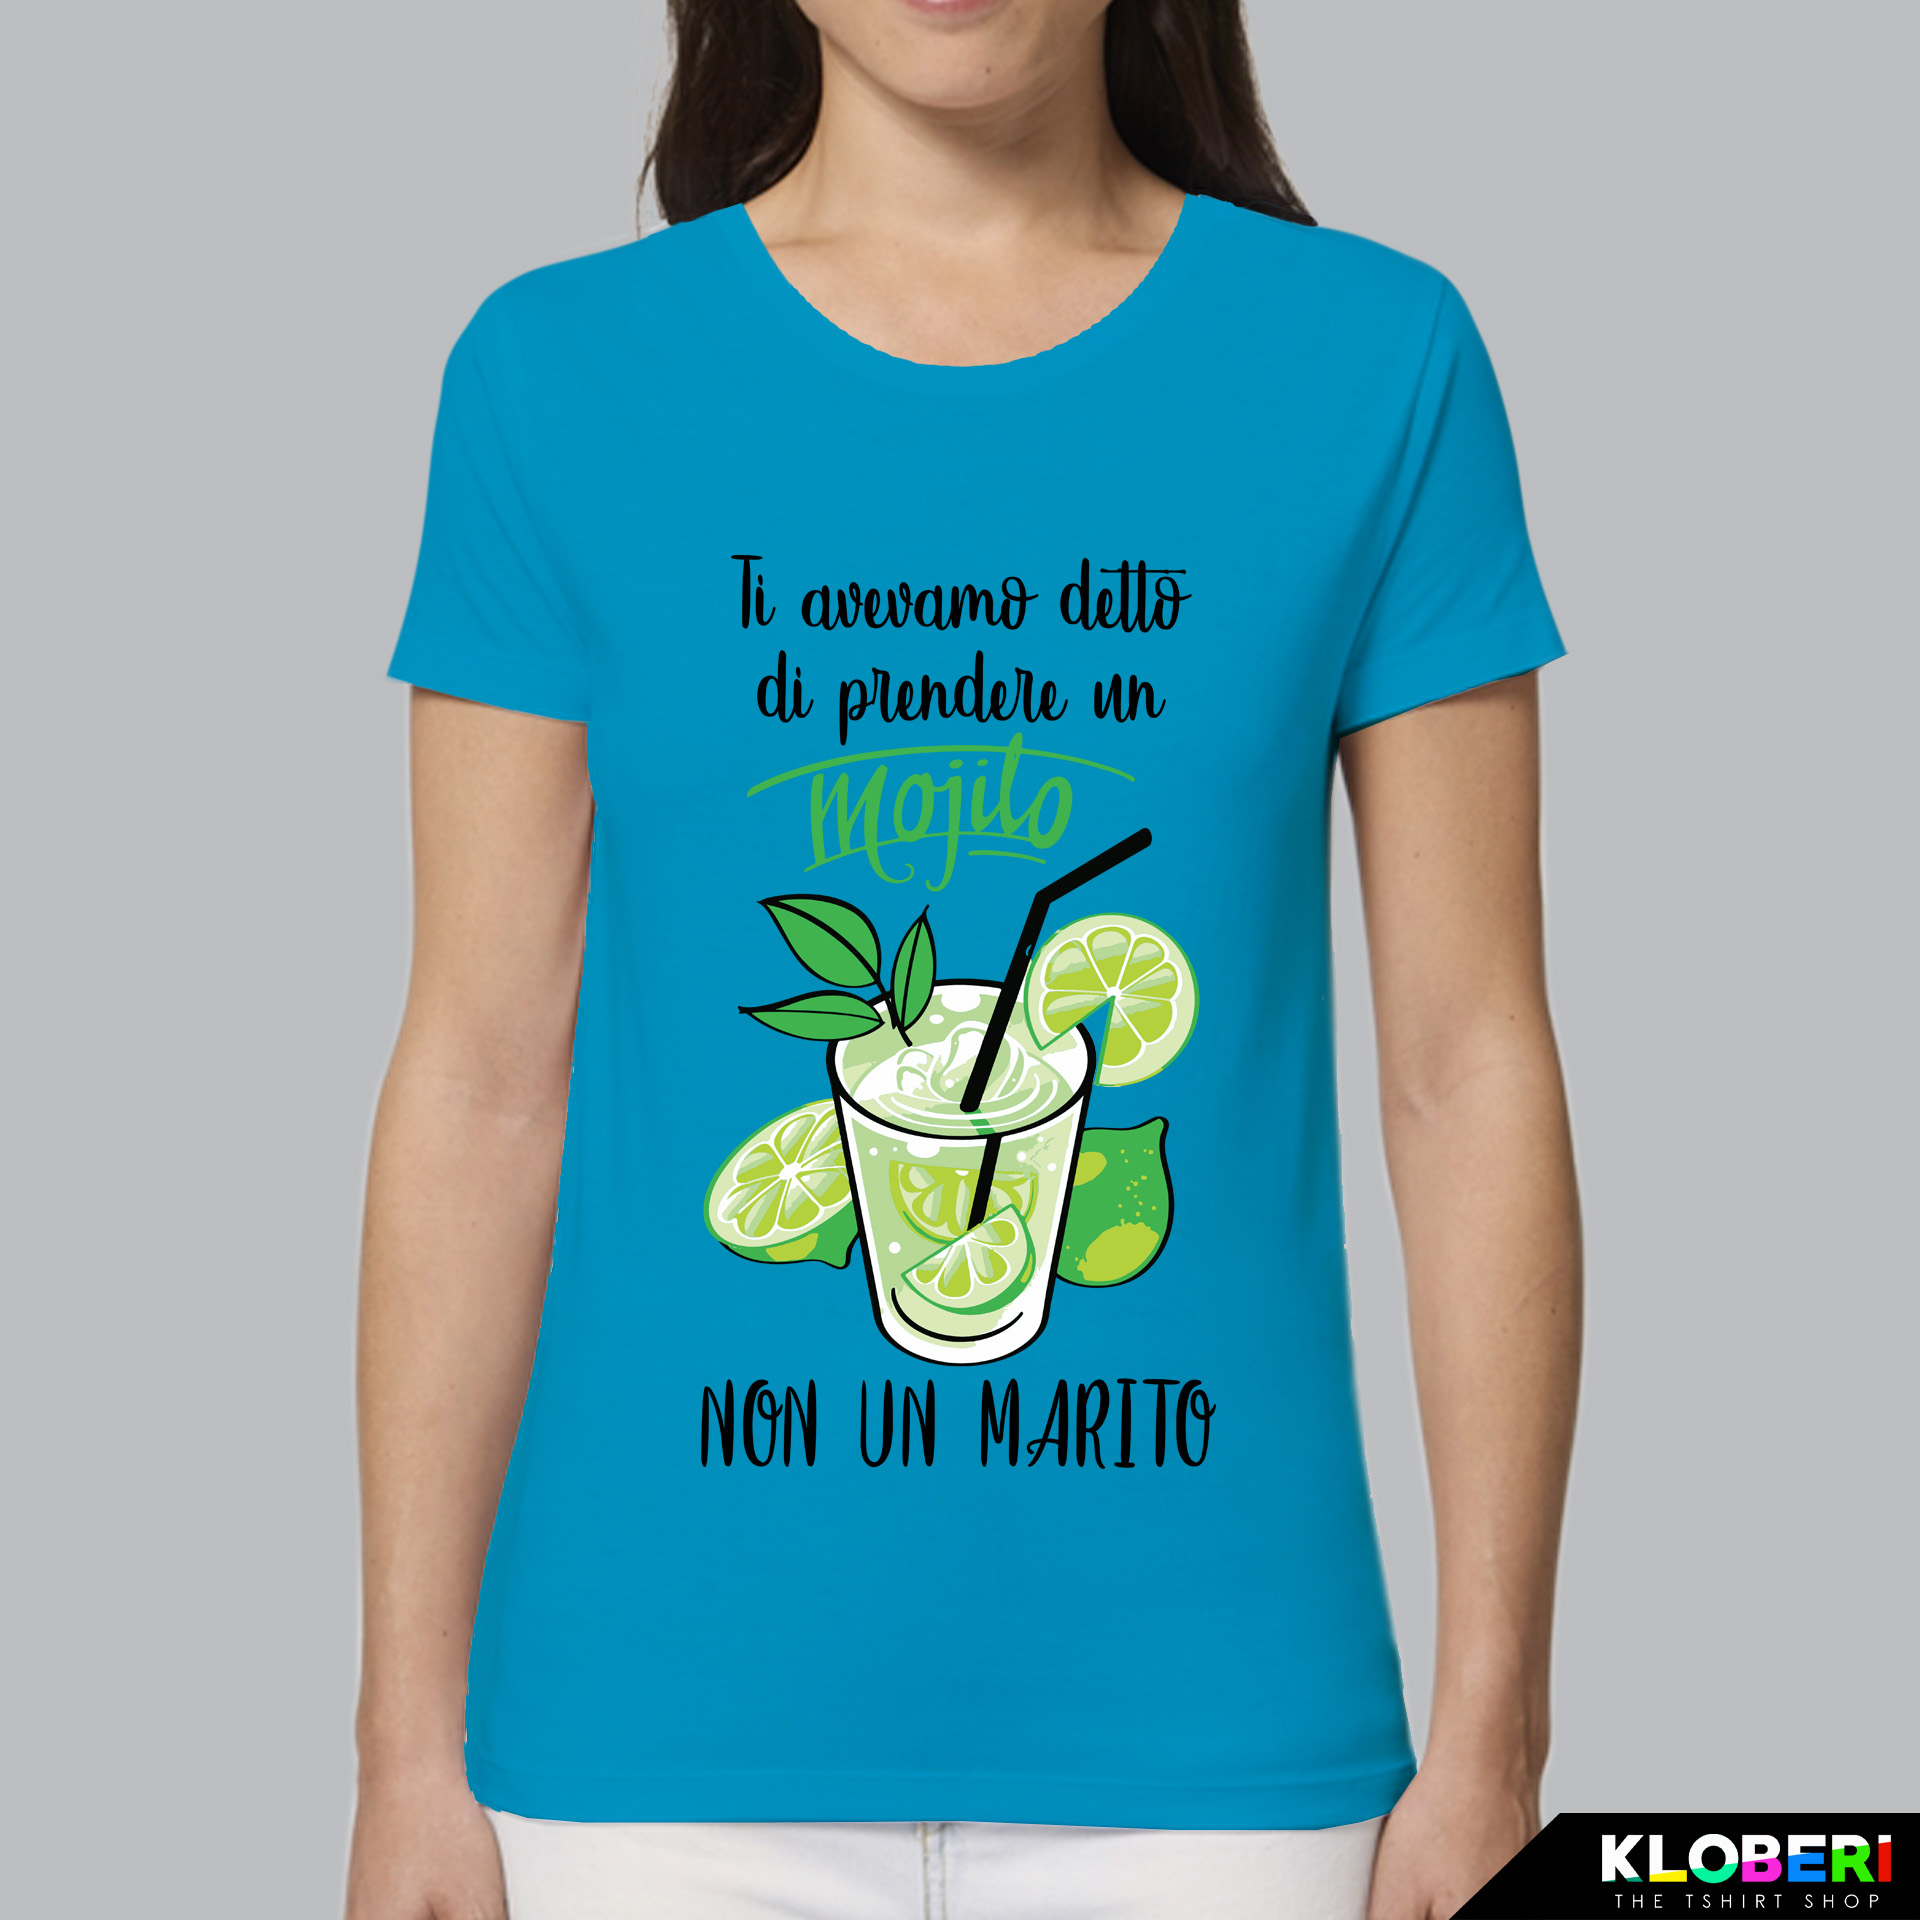 T-Shirt Donna Addio al Nubilato Mojito non un Marito